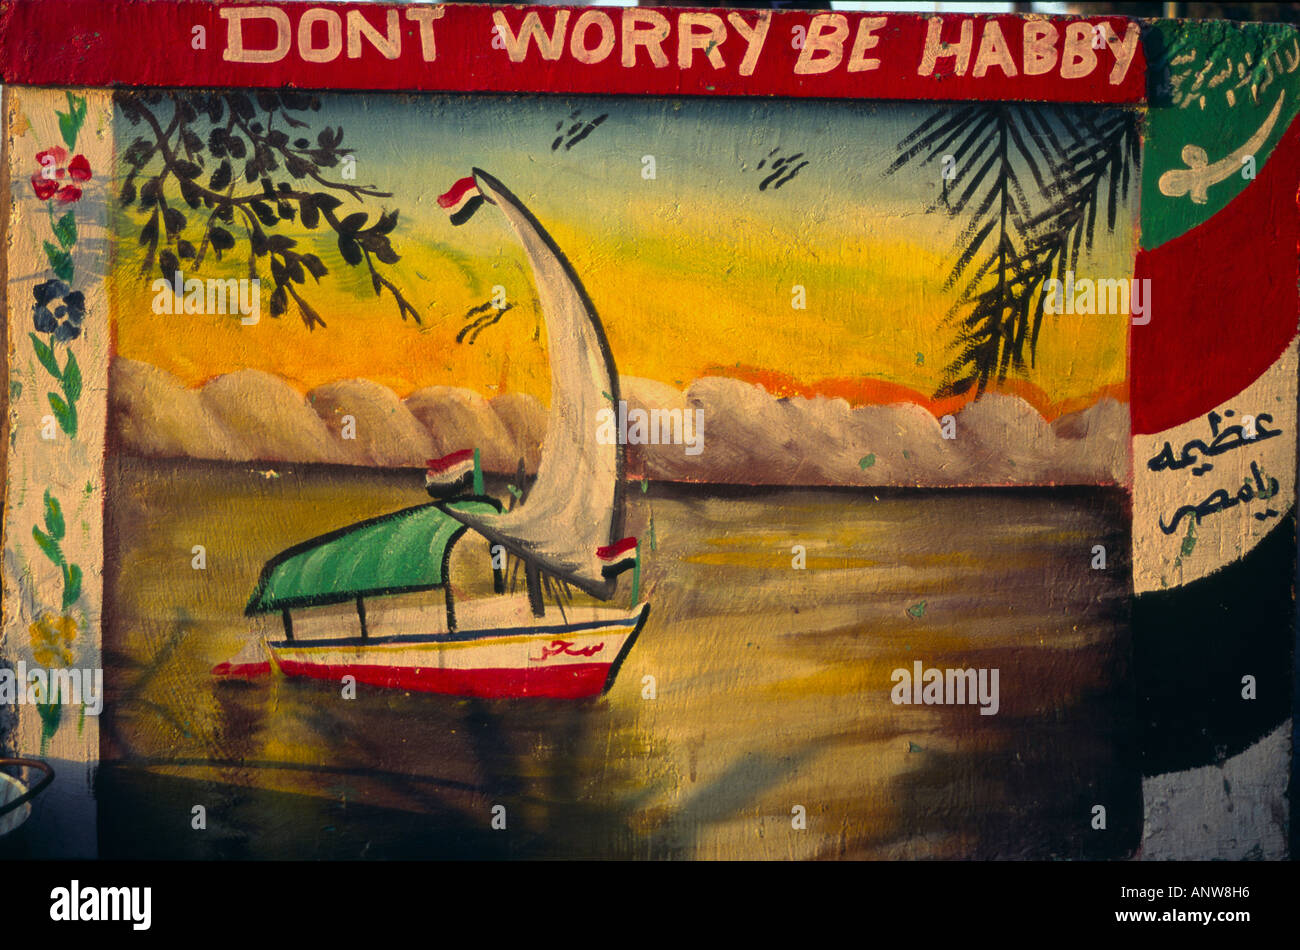 Ägypten Kairo Nil naive Malerei von einer Feluke Baot auf einer Feluke Boot mit ägyptischen Fahnen und schreiben Don t Worry sein habby Stockfoto